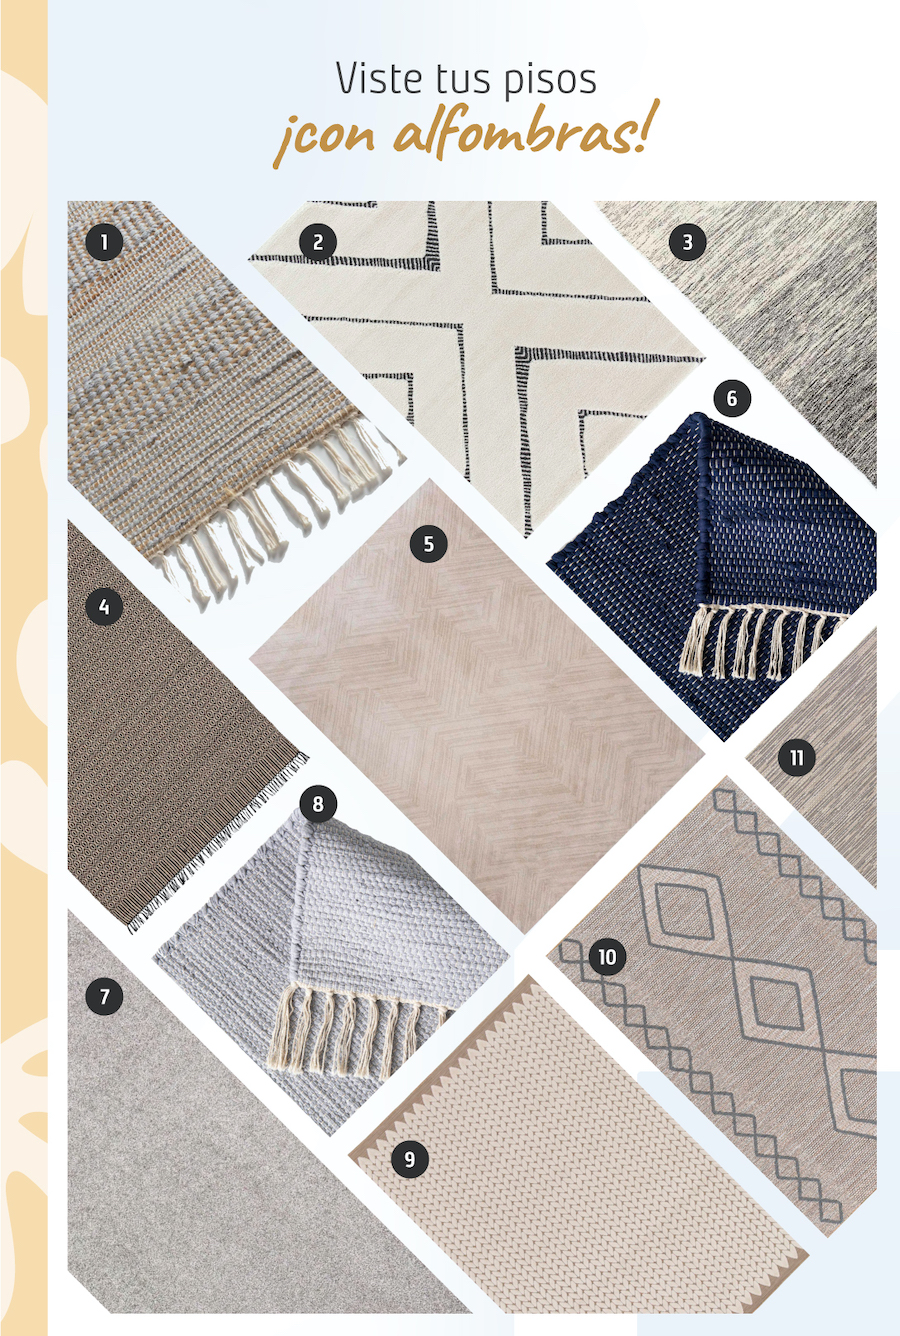 Moodboard de inspiración con 11 tipos de alfombras para living comedor en tonos neutros disponibles en Sodimac.